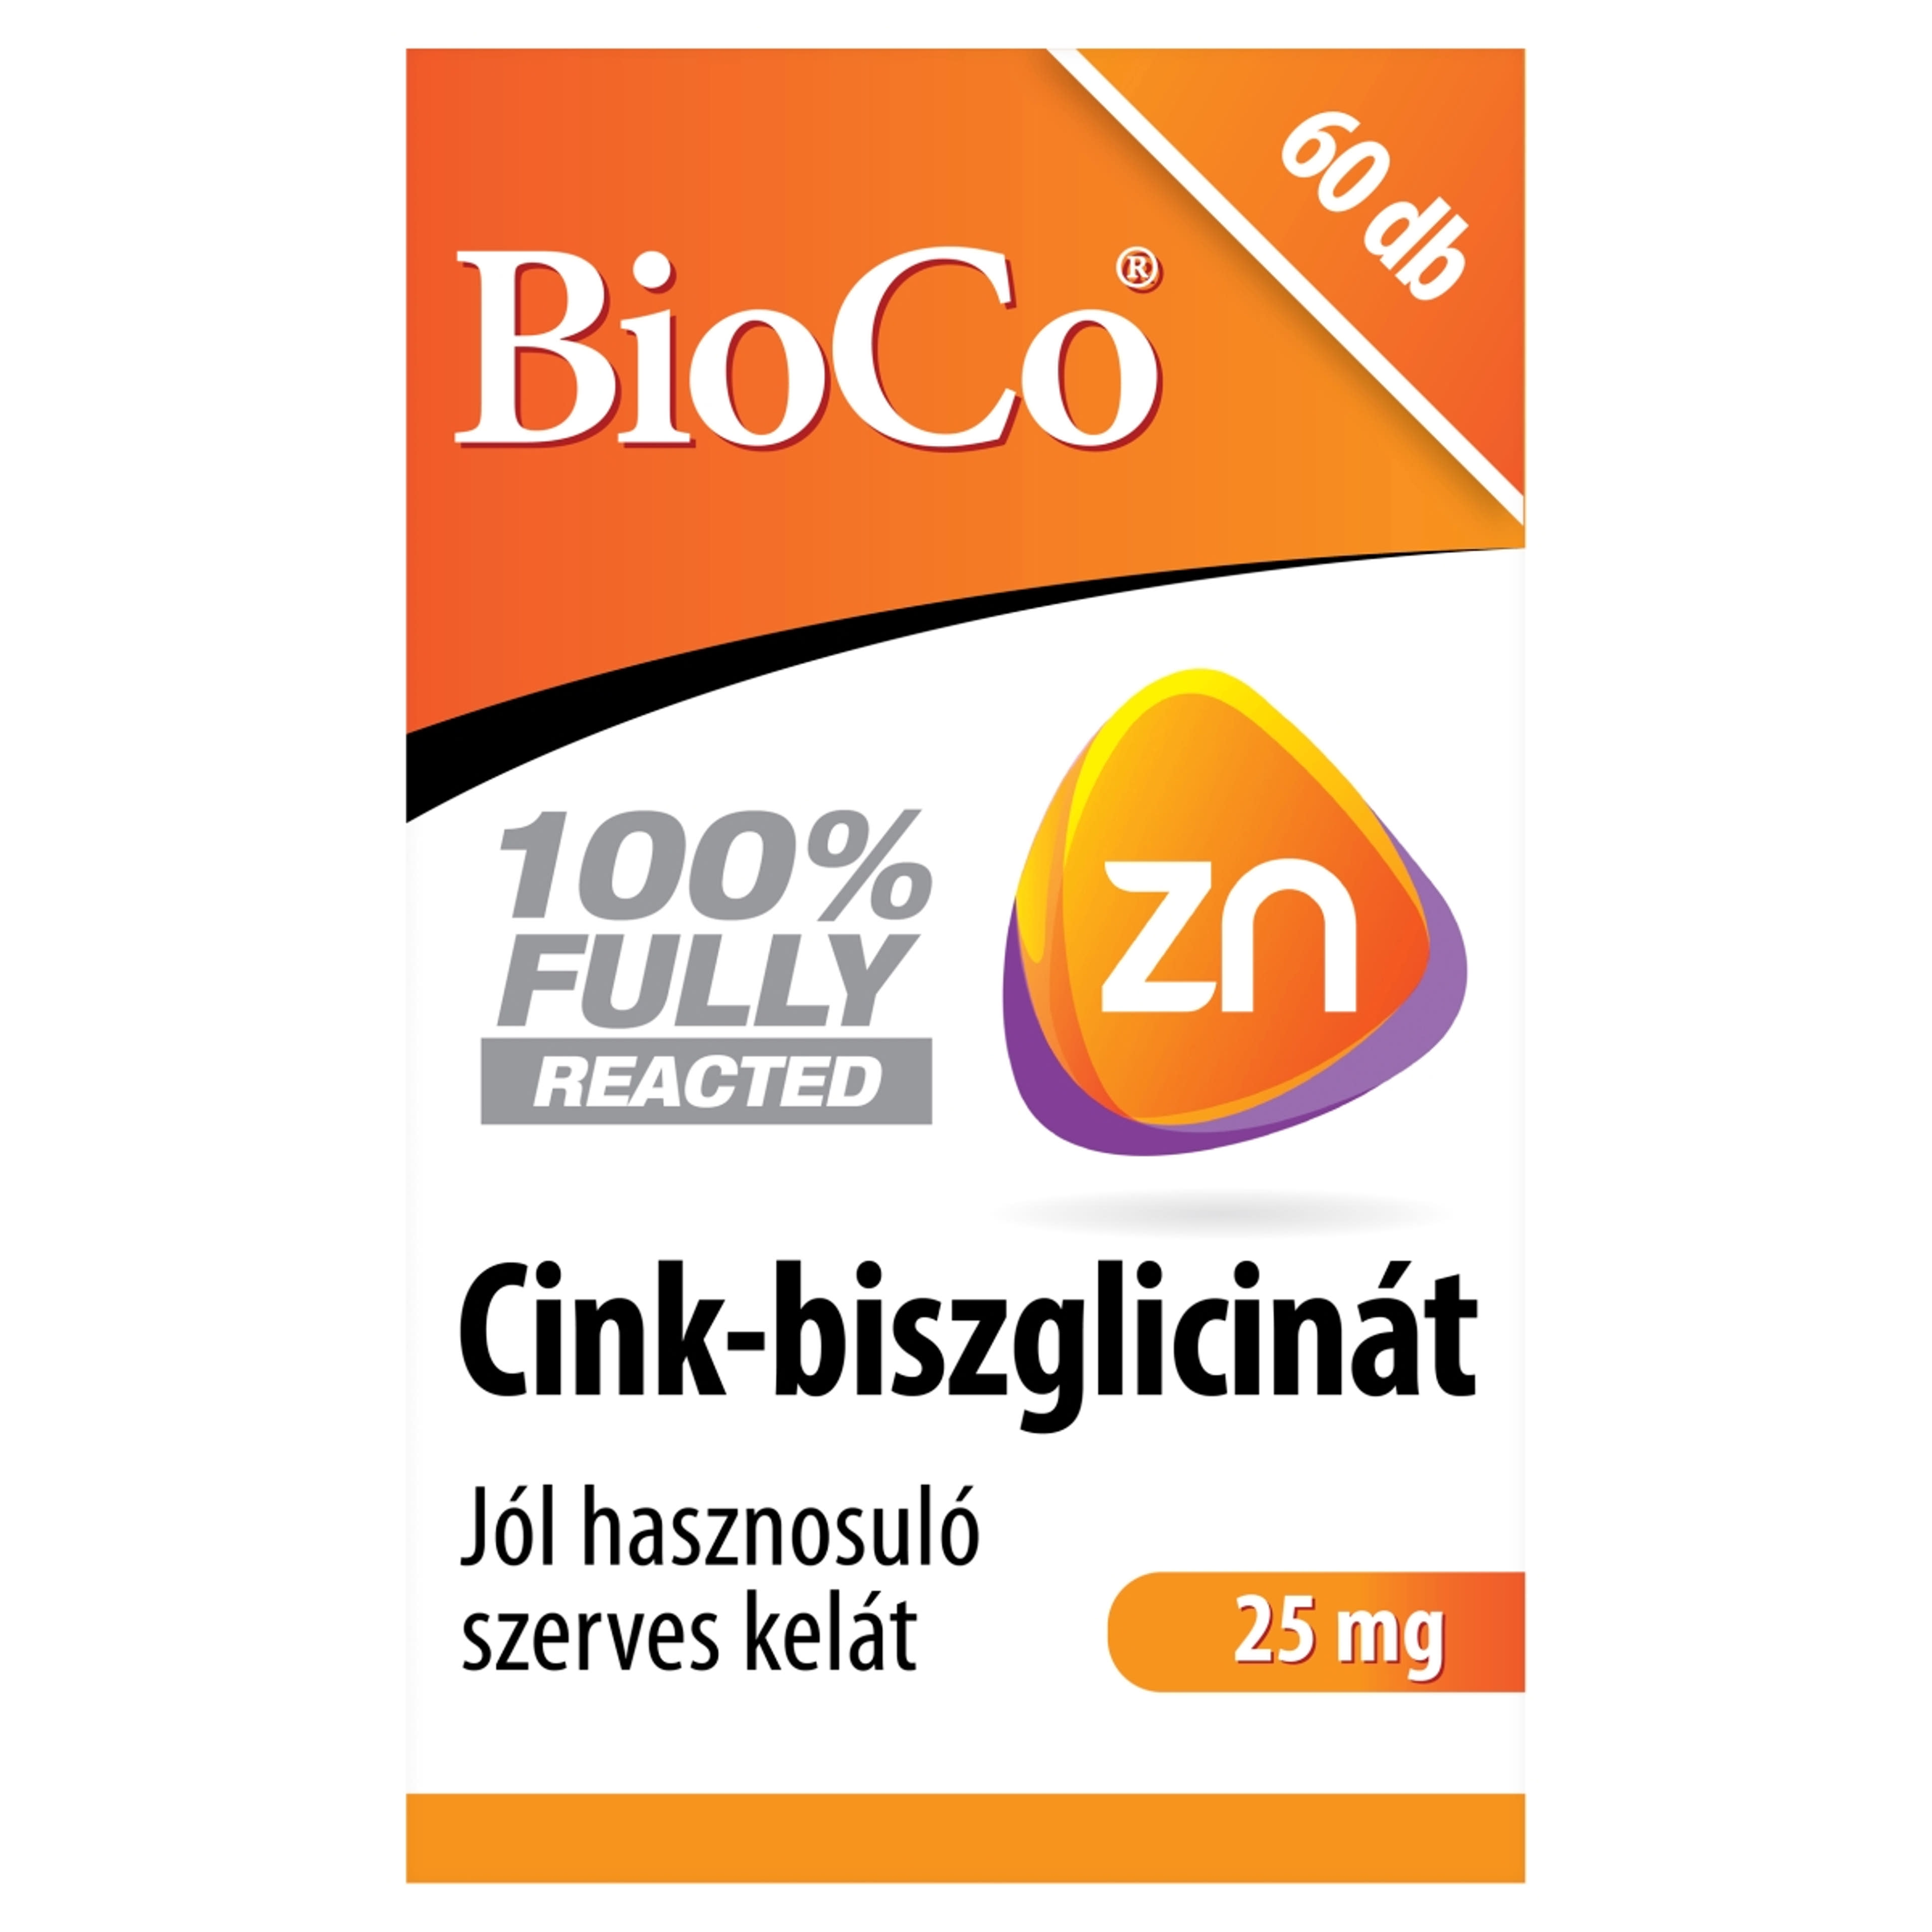 BioCo Cink-biszglicinát étrend-kiegészítő tabletta - 60 db-1